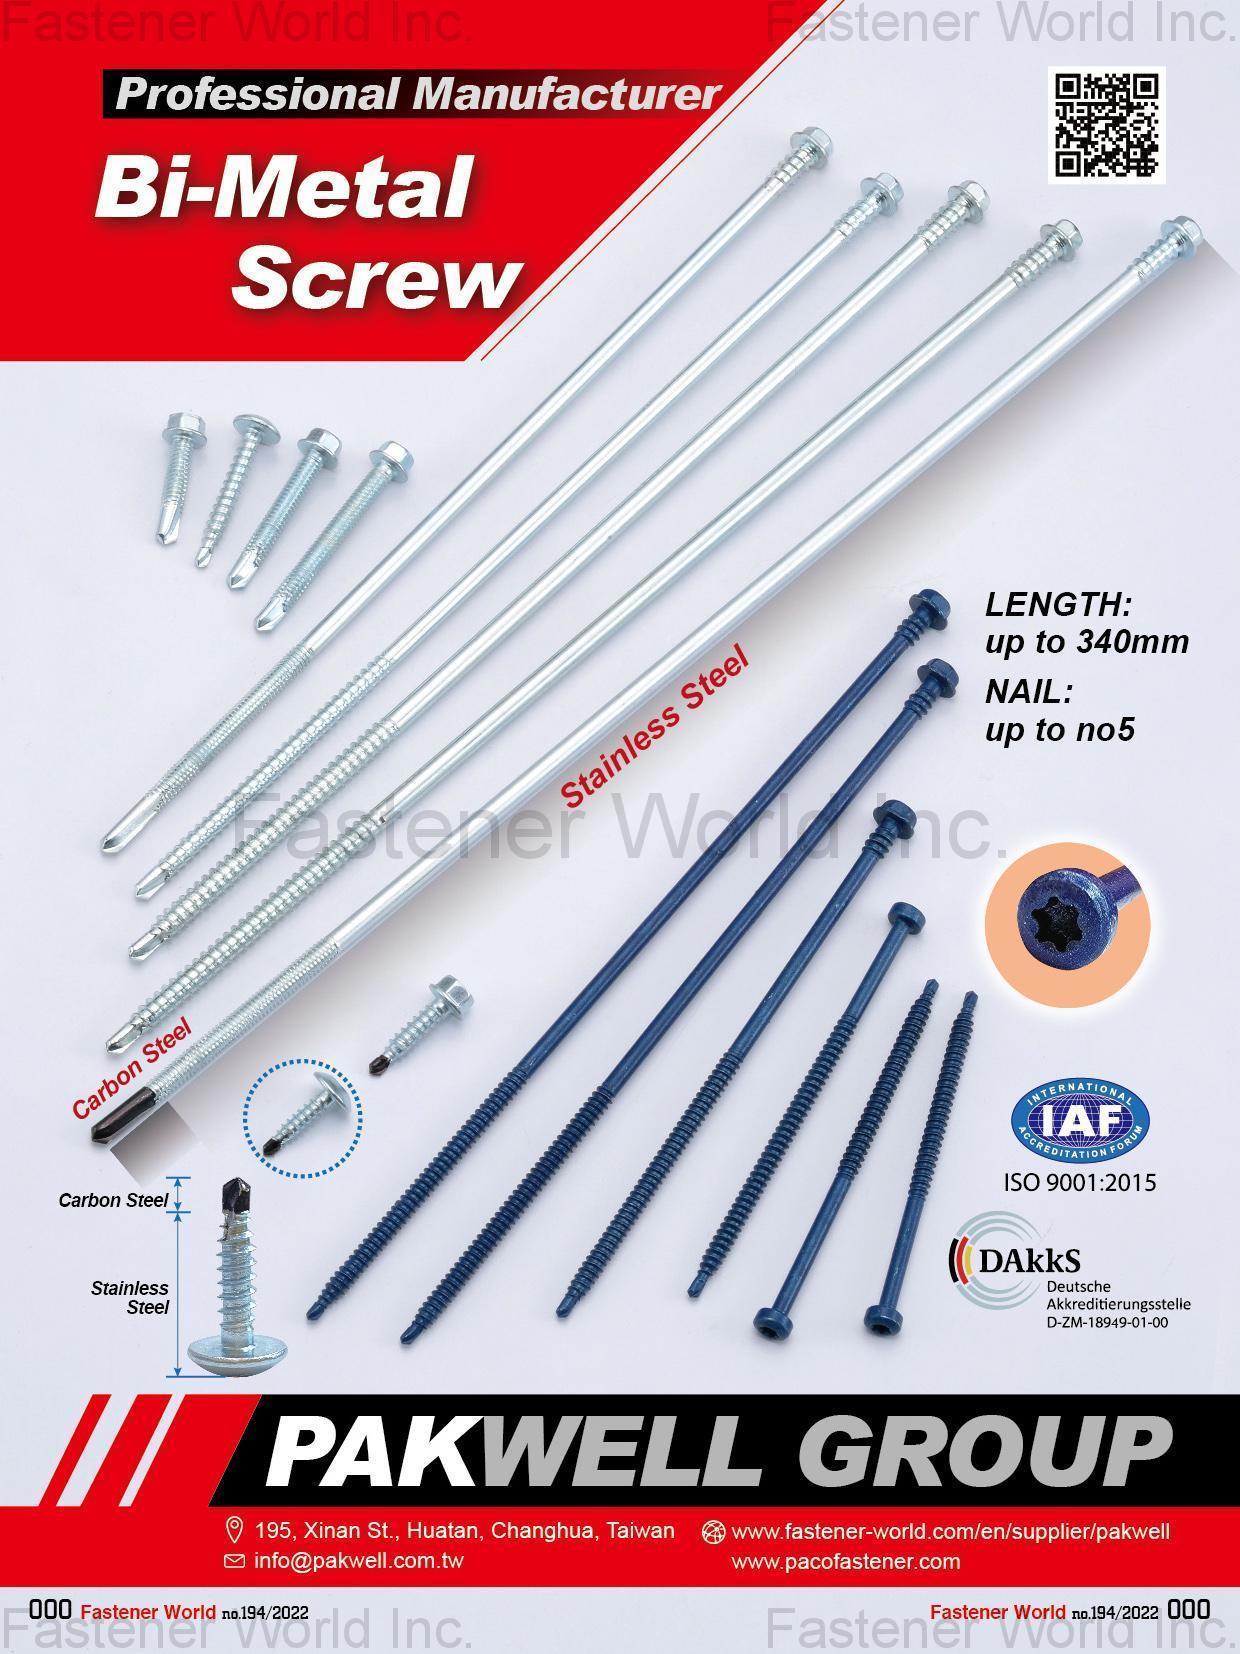 PAKWELL CO., LTD. , Stainless Steel Screws / Stainless Steel Washers / Bi-metal Screws